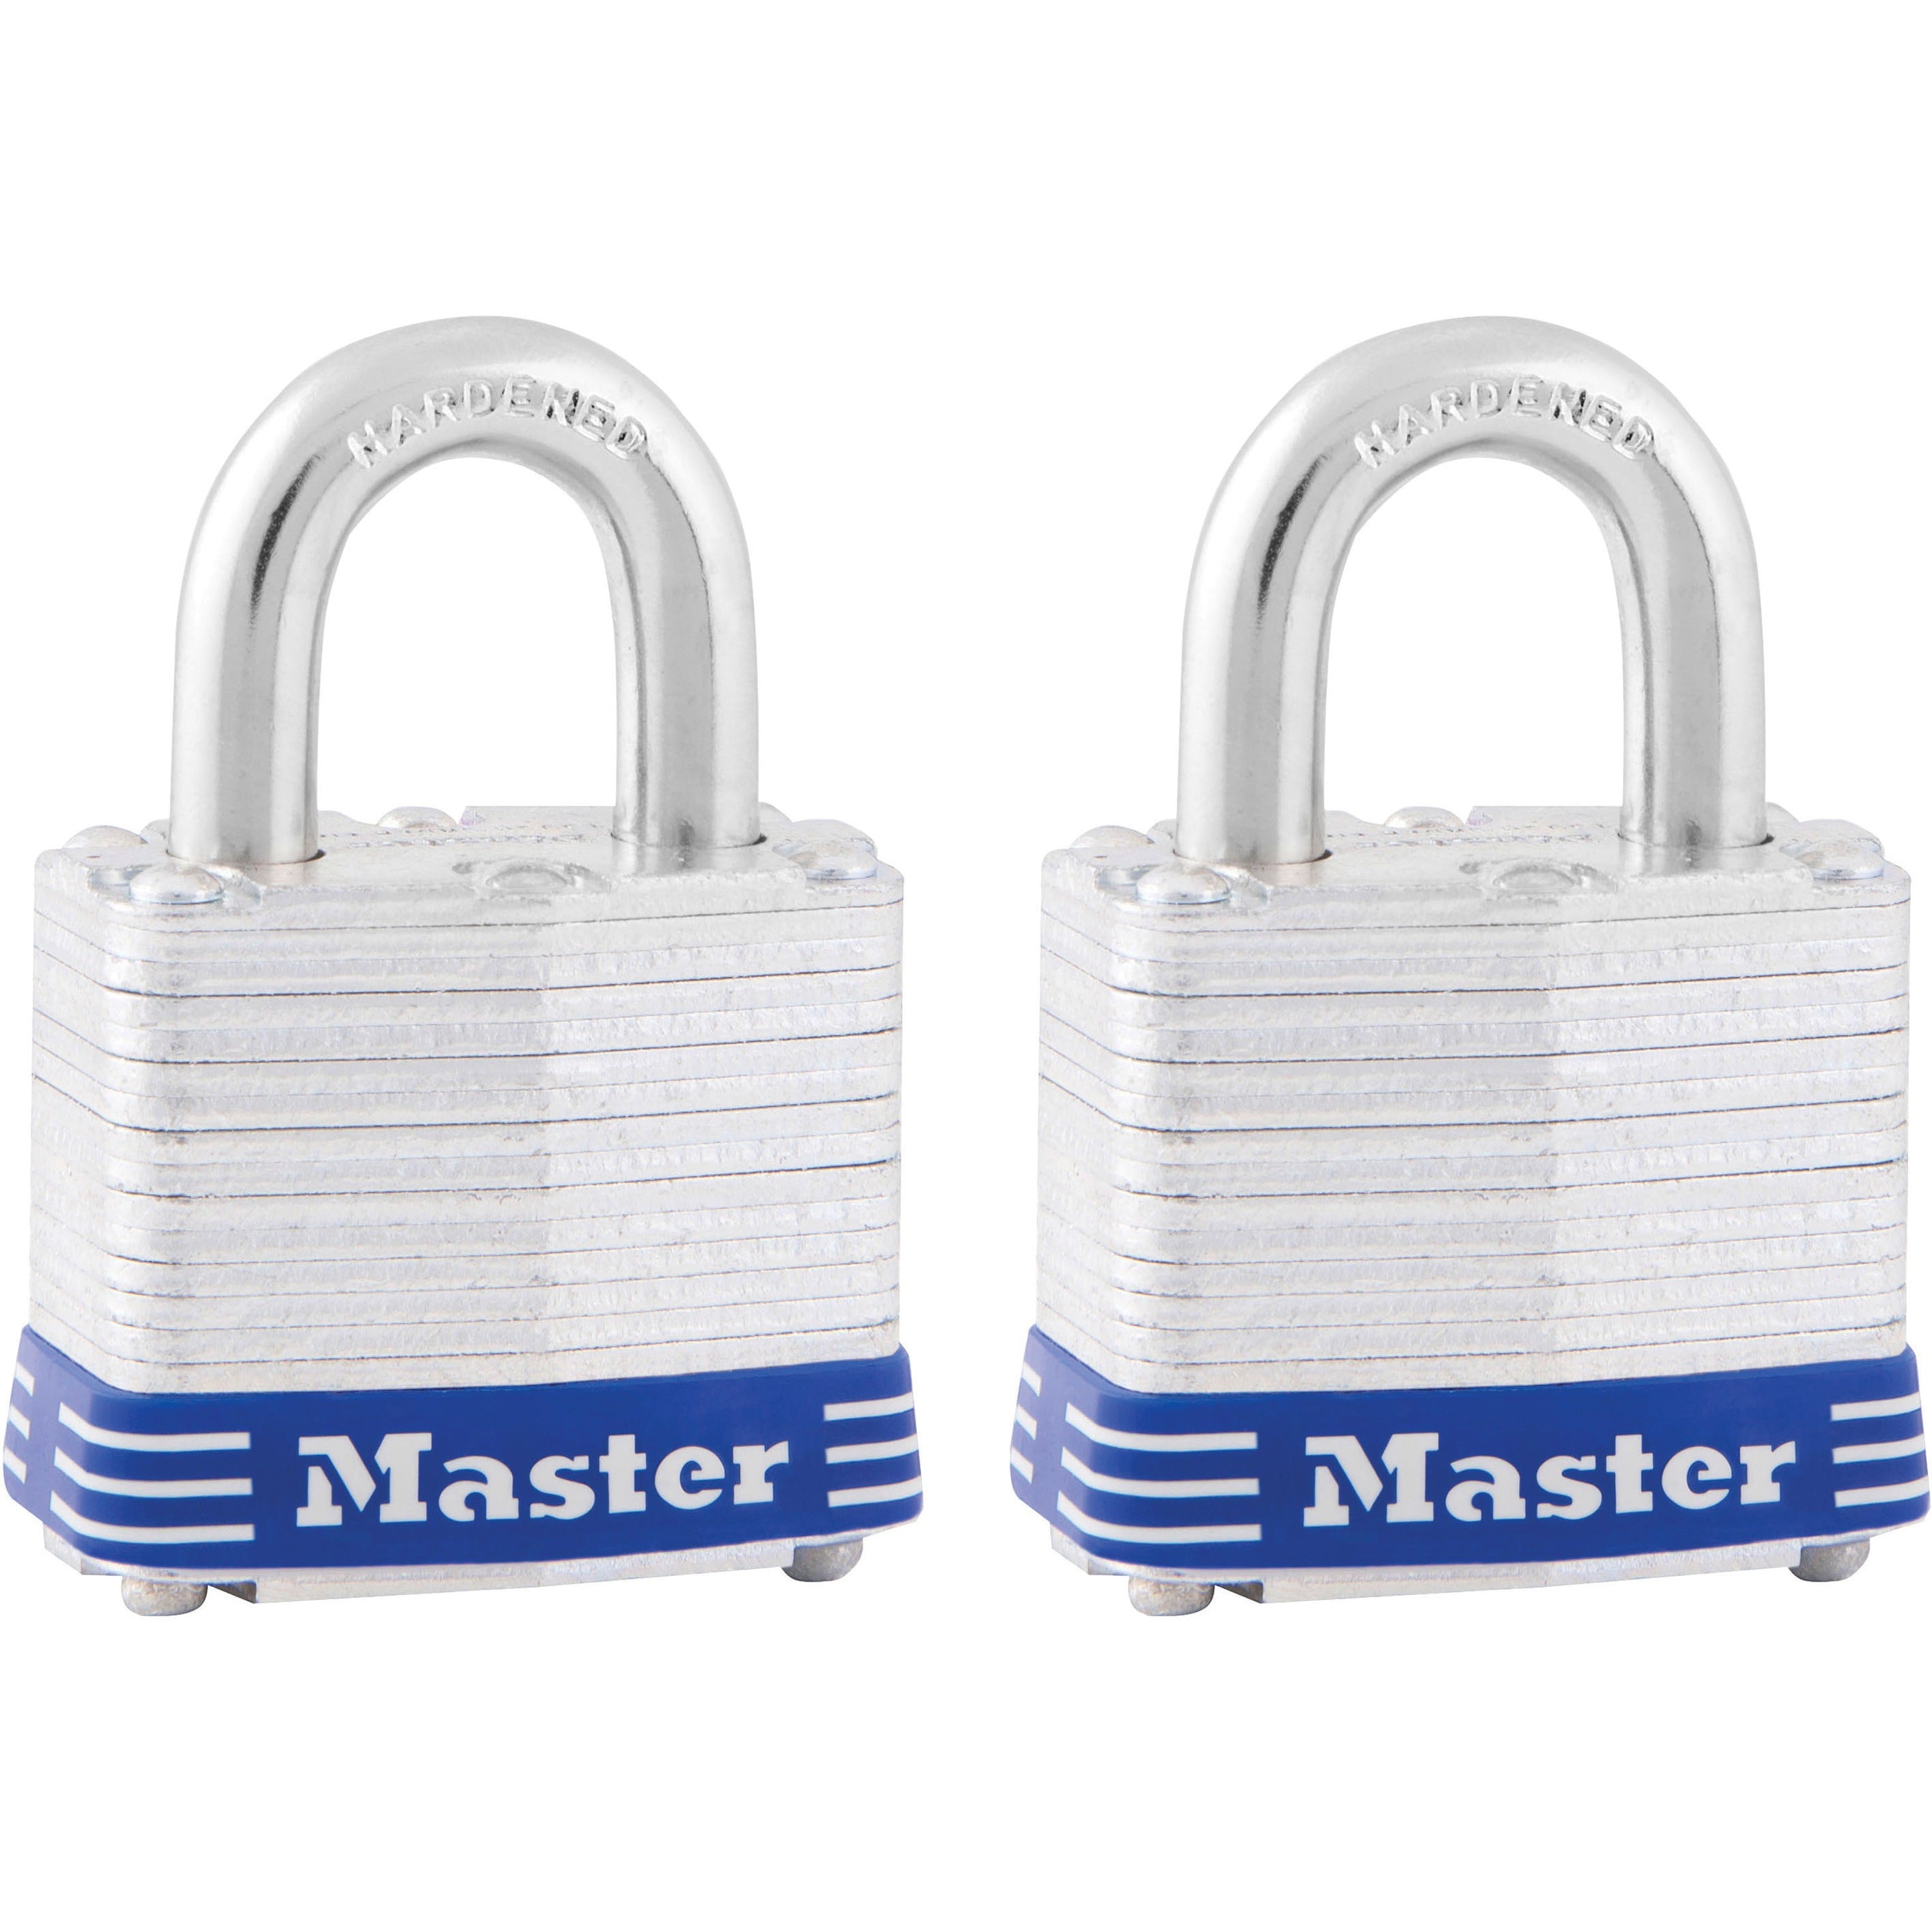 Master Lock High Security Padlock - Keyed Alike - 0.28" Shackle Diameter - Cut Resistant, Pick Proof, Rust Resistant - Steel - Silver - 2 / Pack - 